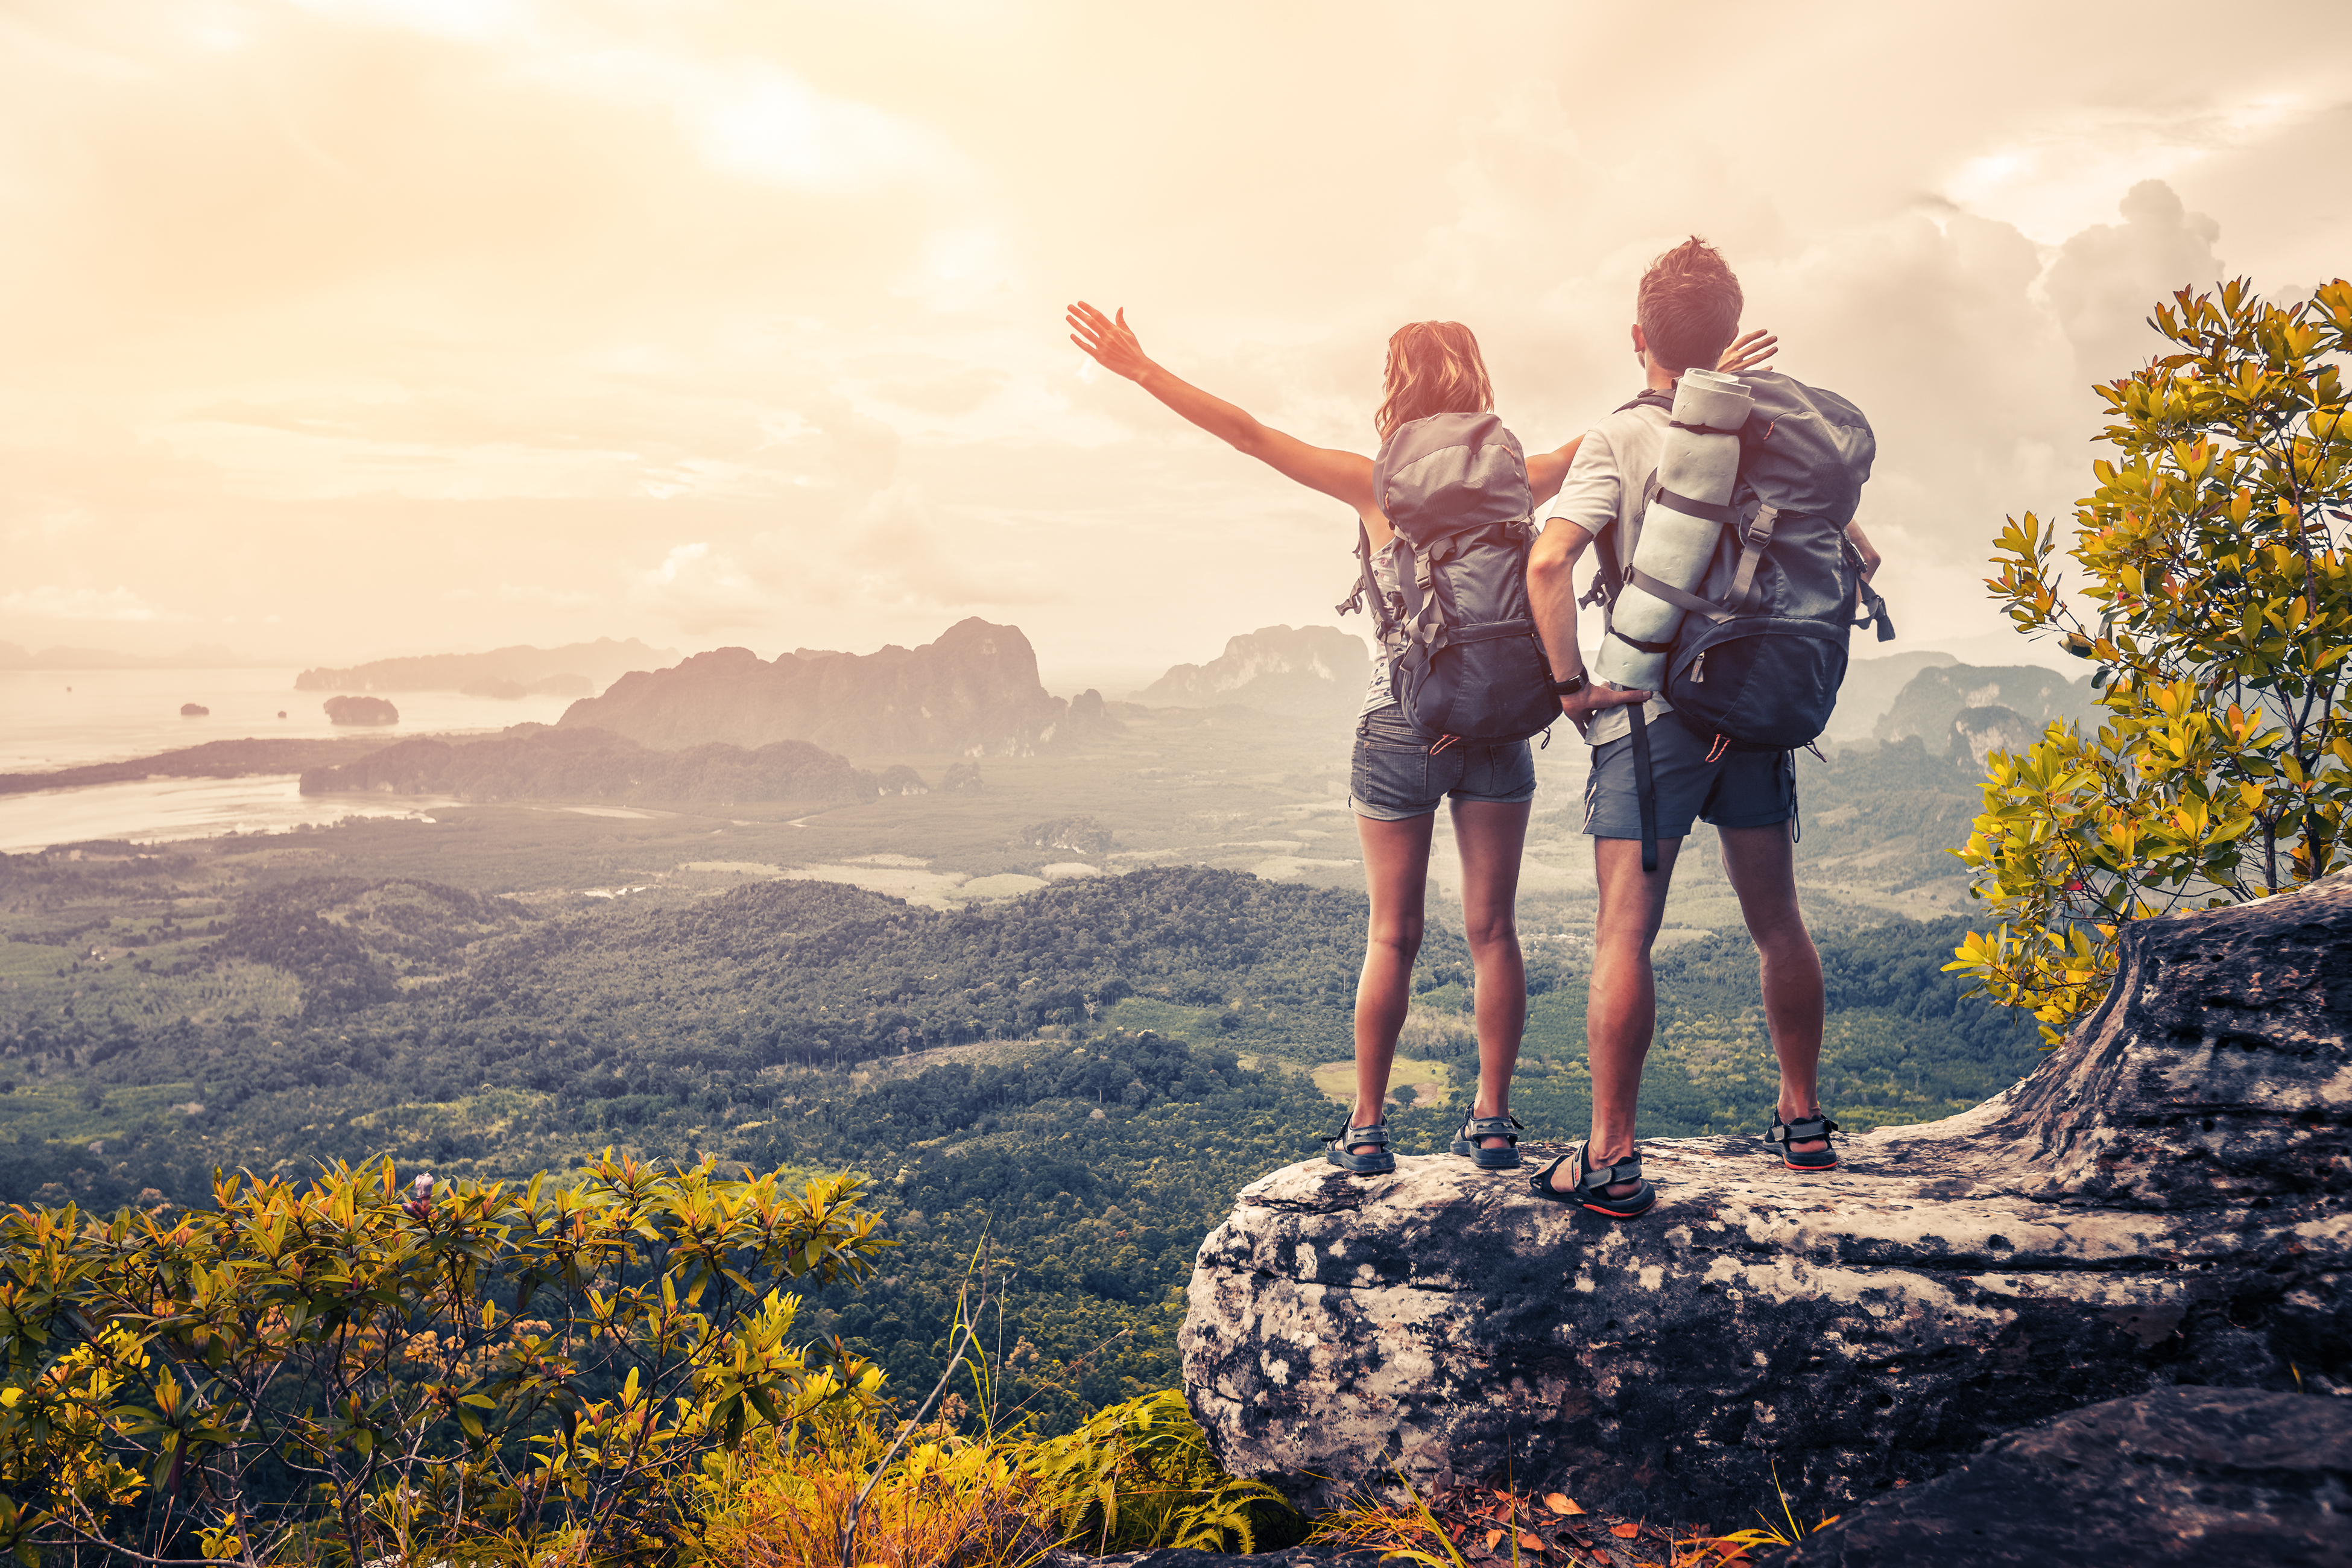 Una pareja disfruta de una vista mientras viajan juntos | Fuente: Shutterstock